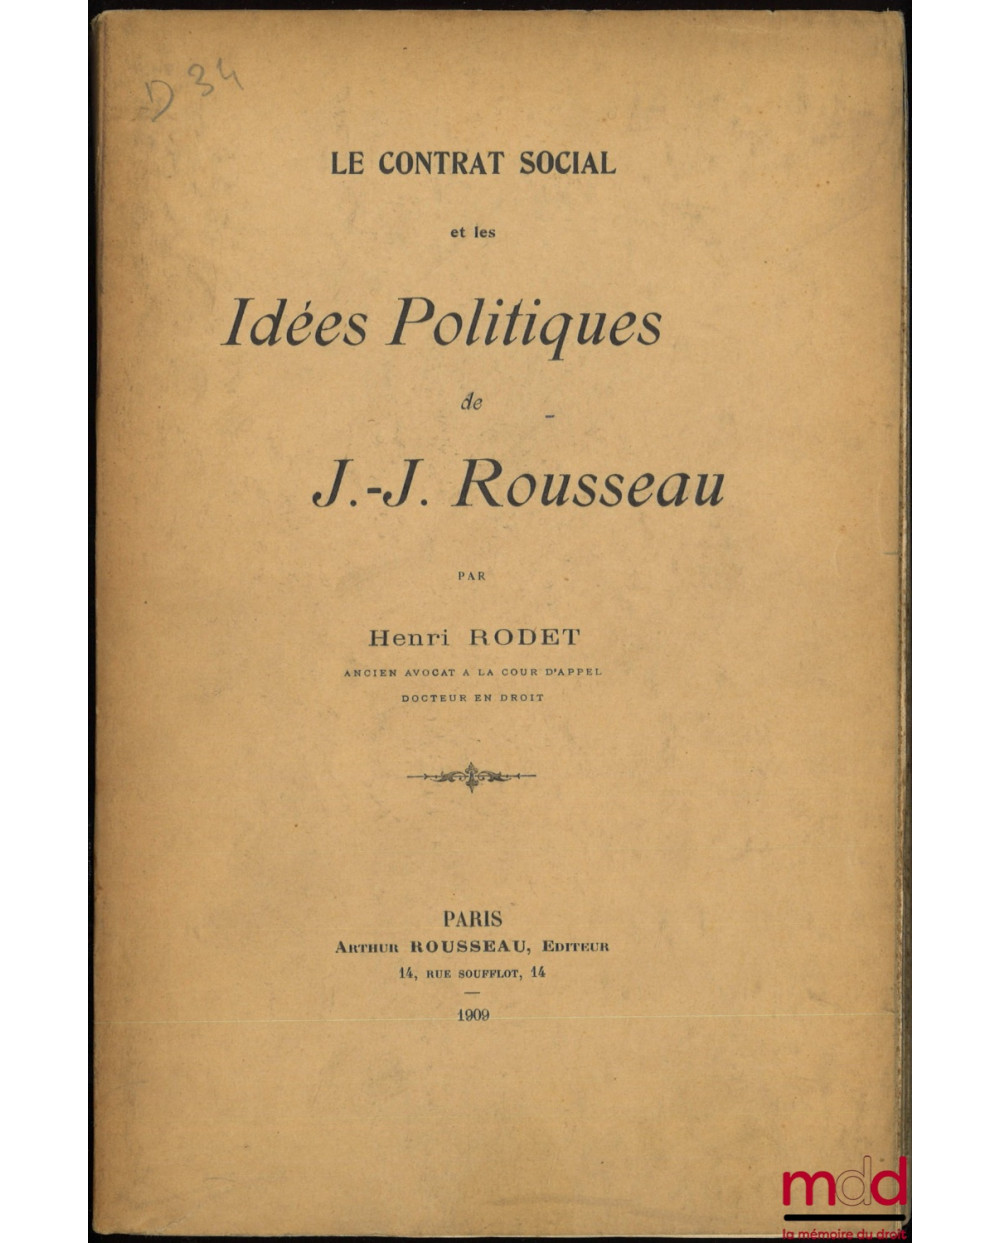 LE CONTRAT SOCIAL ET LE IDÉES POLITIQUES DE J.-J. ROUSSEAU